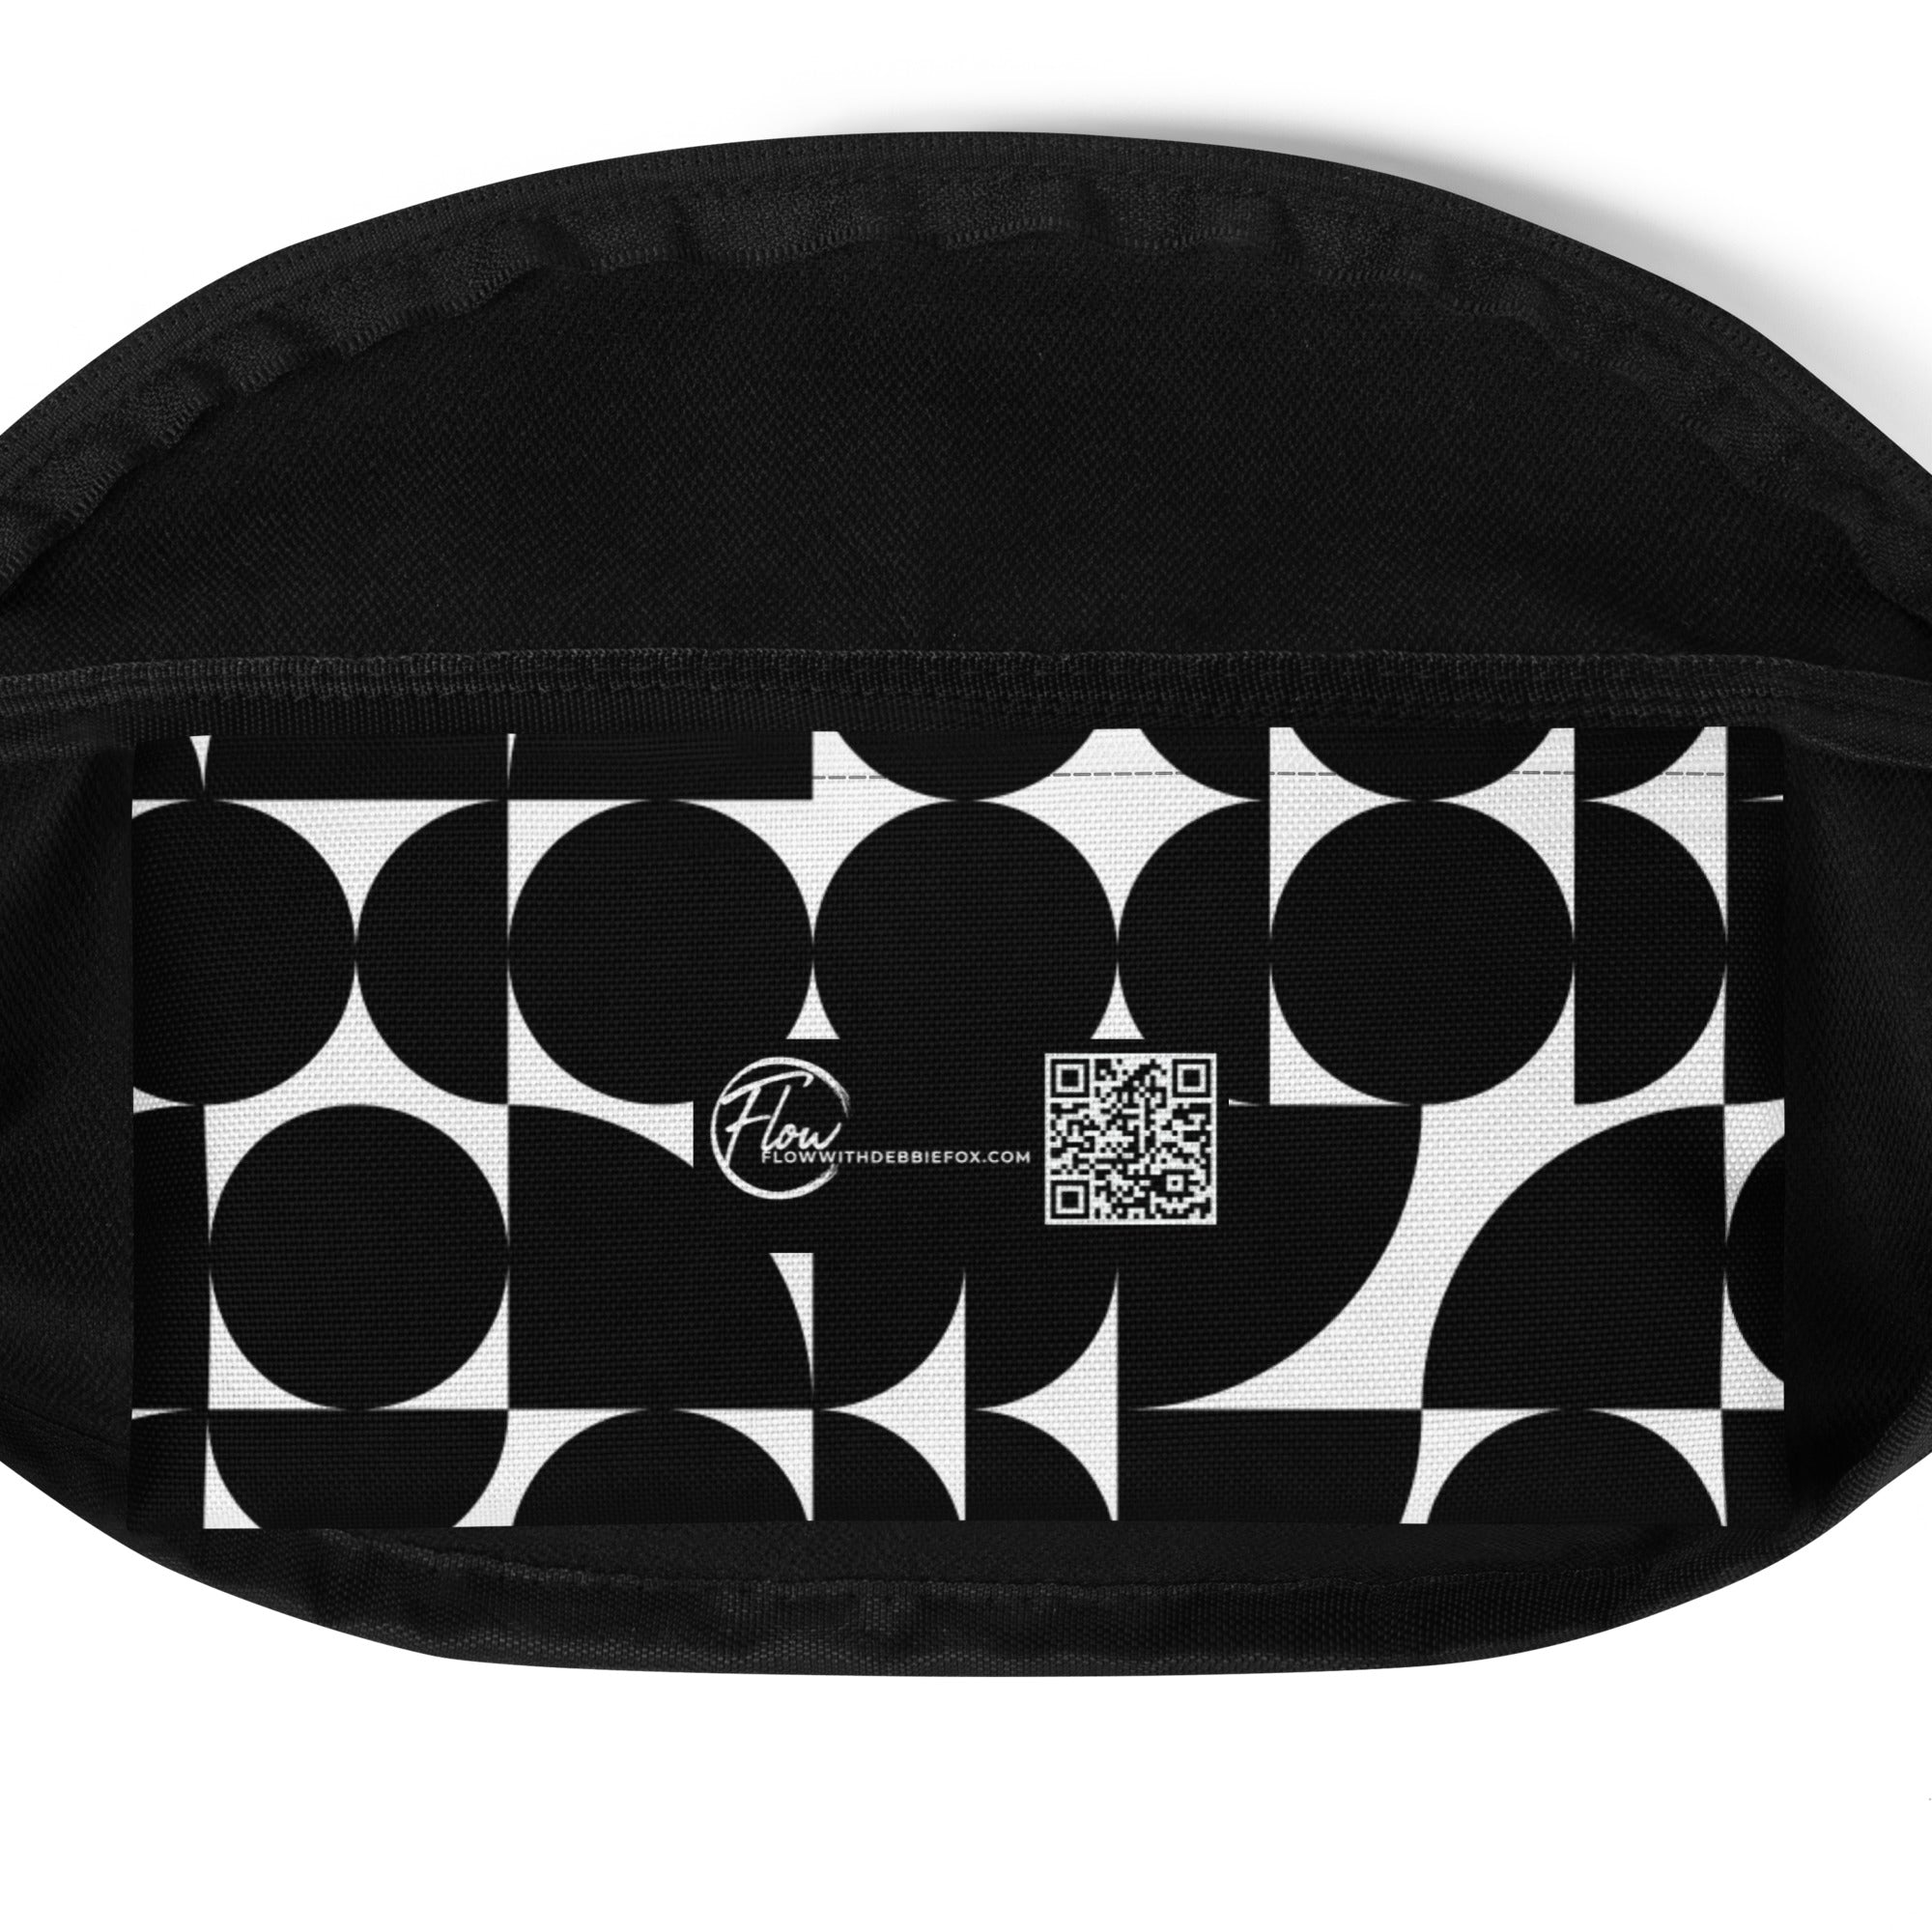 *Black & White Bounce Design* Waist/Crossover Body Bag